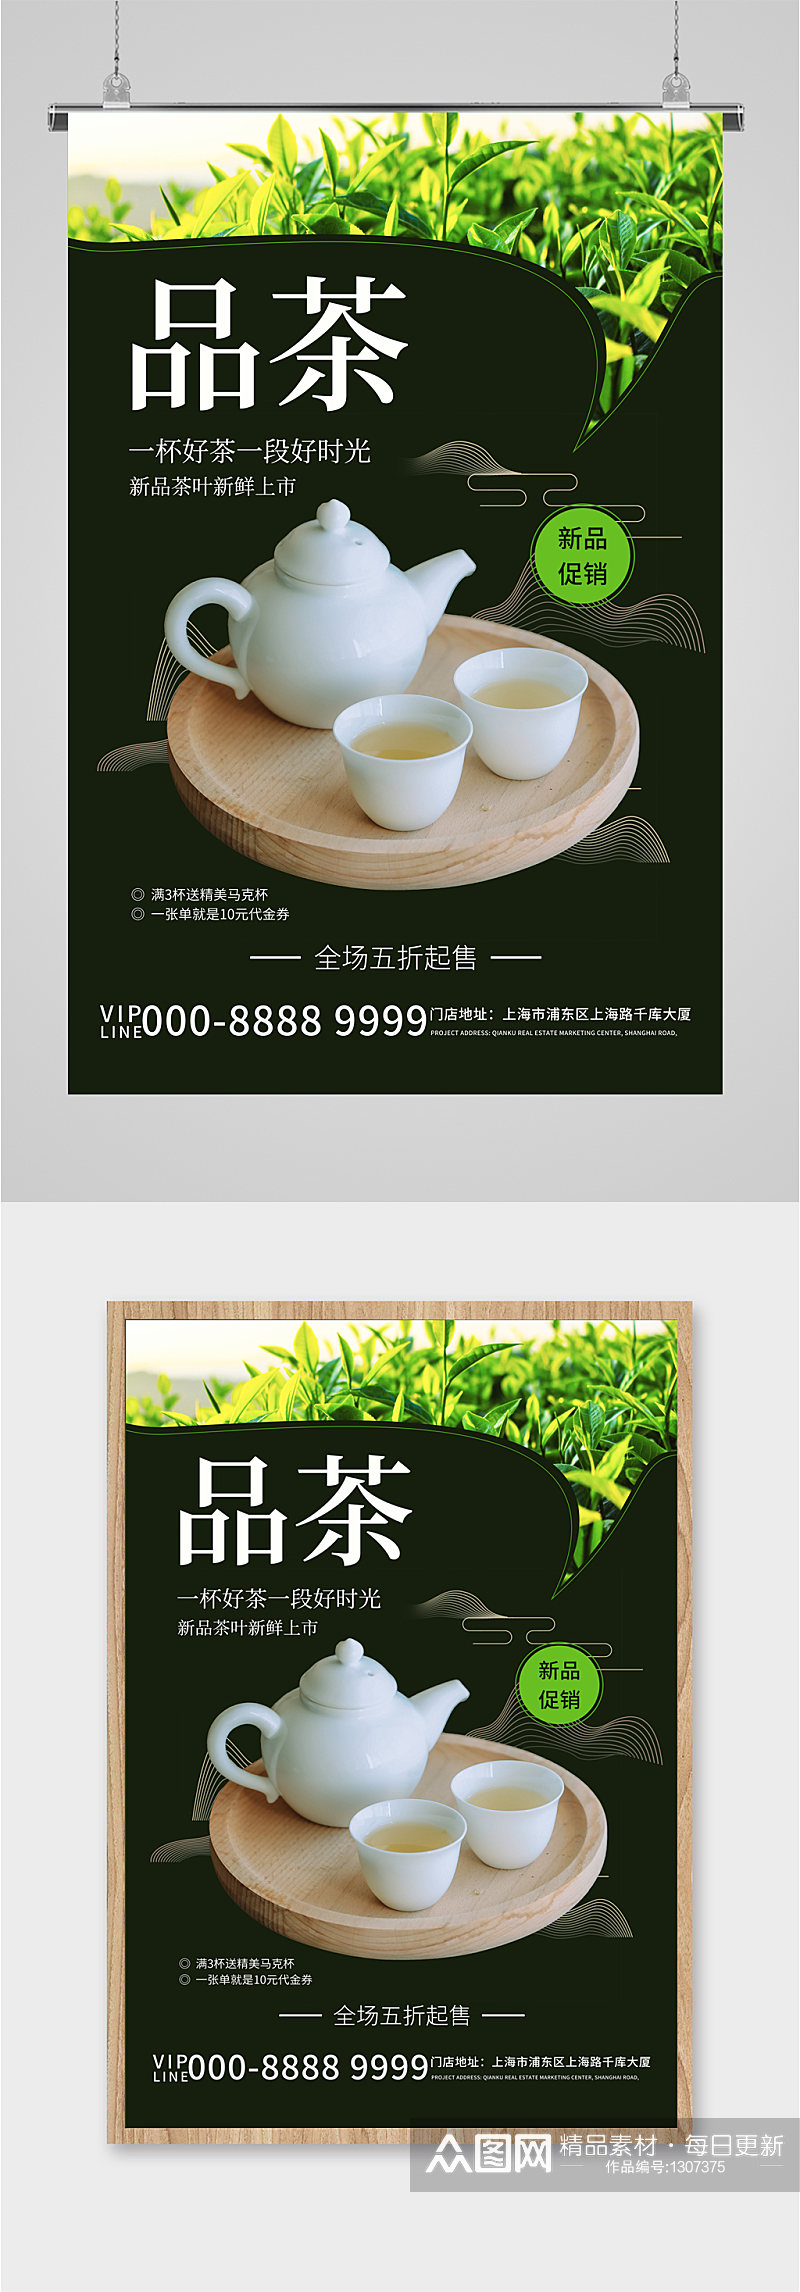 品茶茶文化宣传海报素材